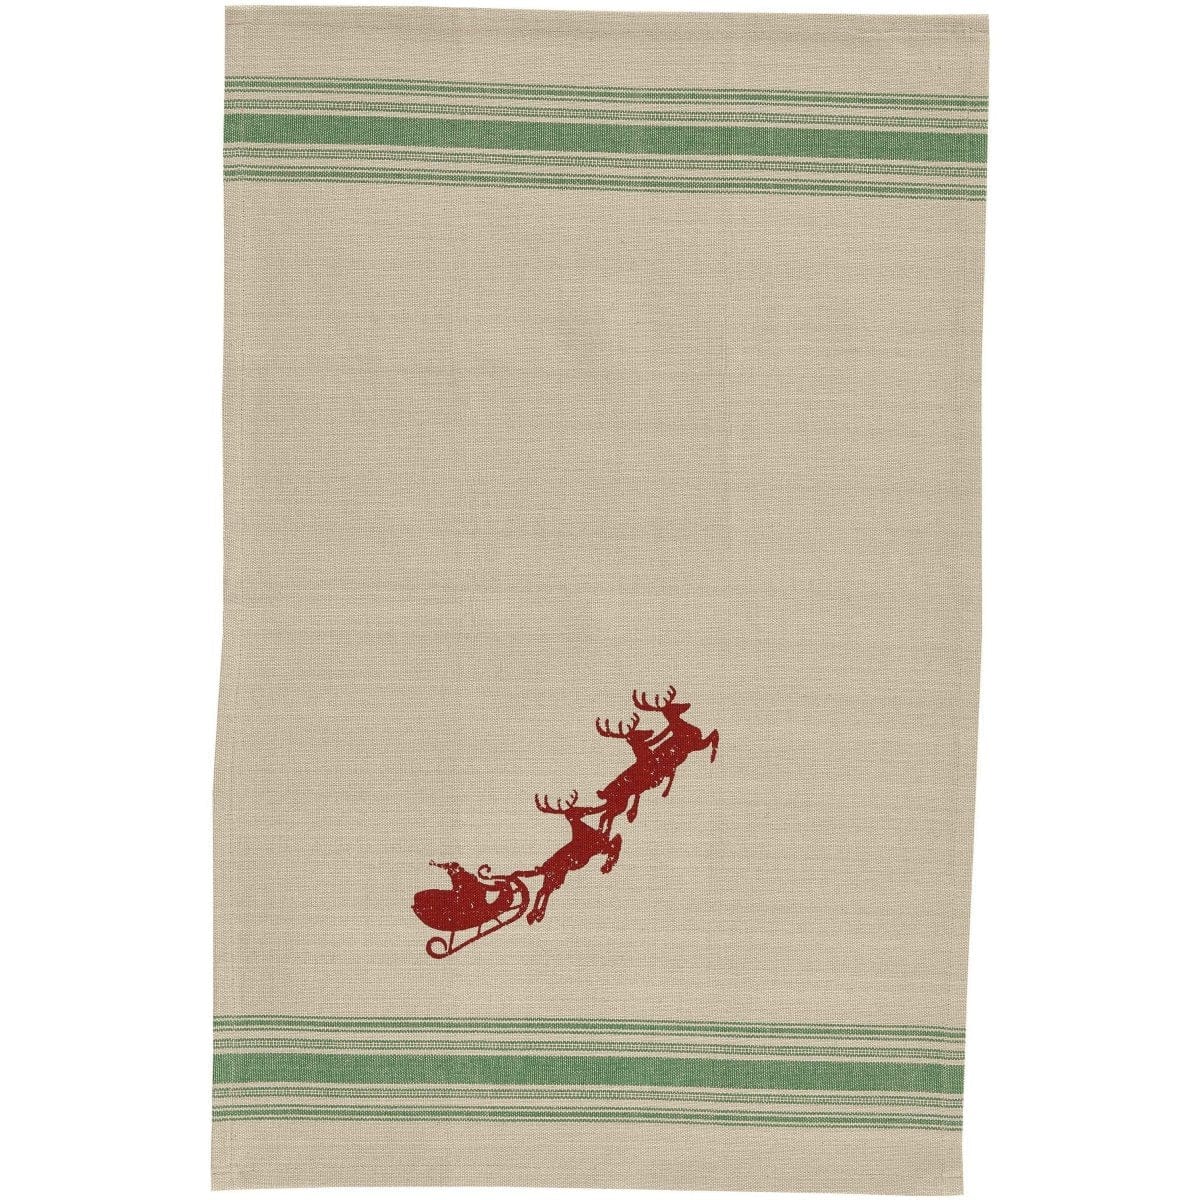 Here Comes Santa Decorative Towel-Park Designs-The Village Merchant